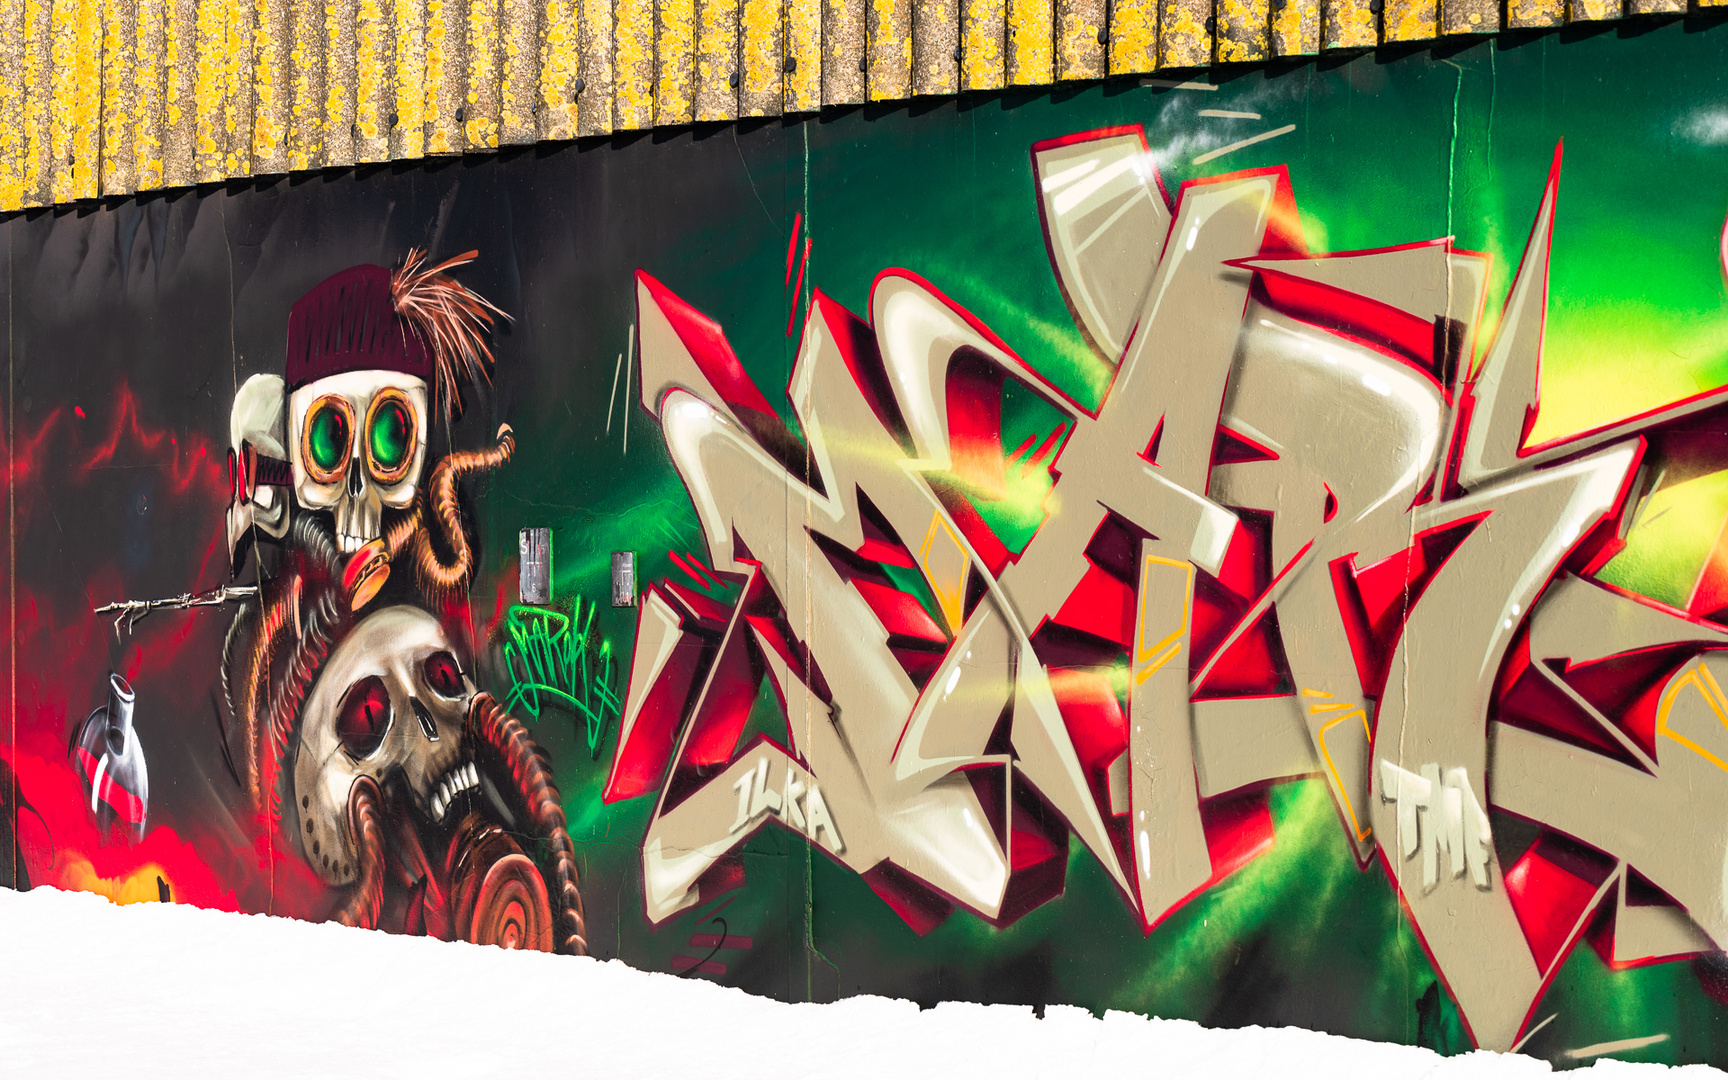 More Graffiti